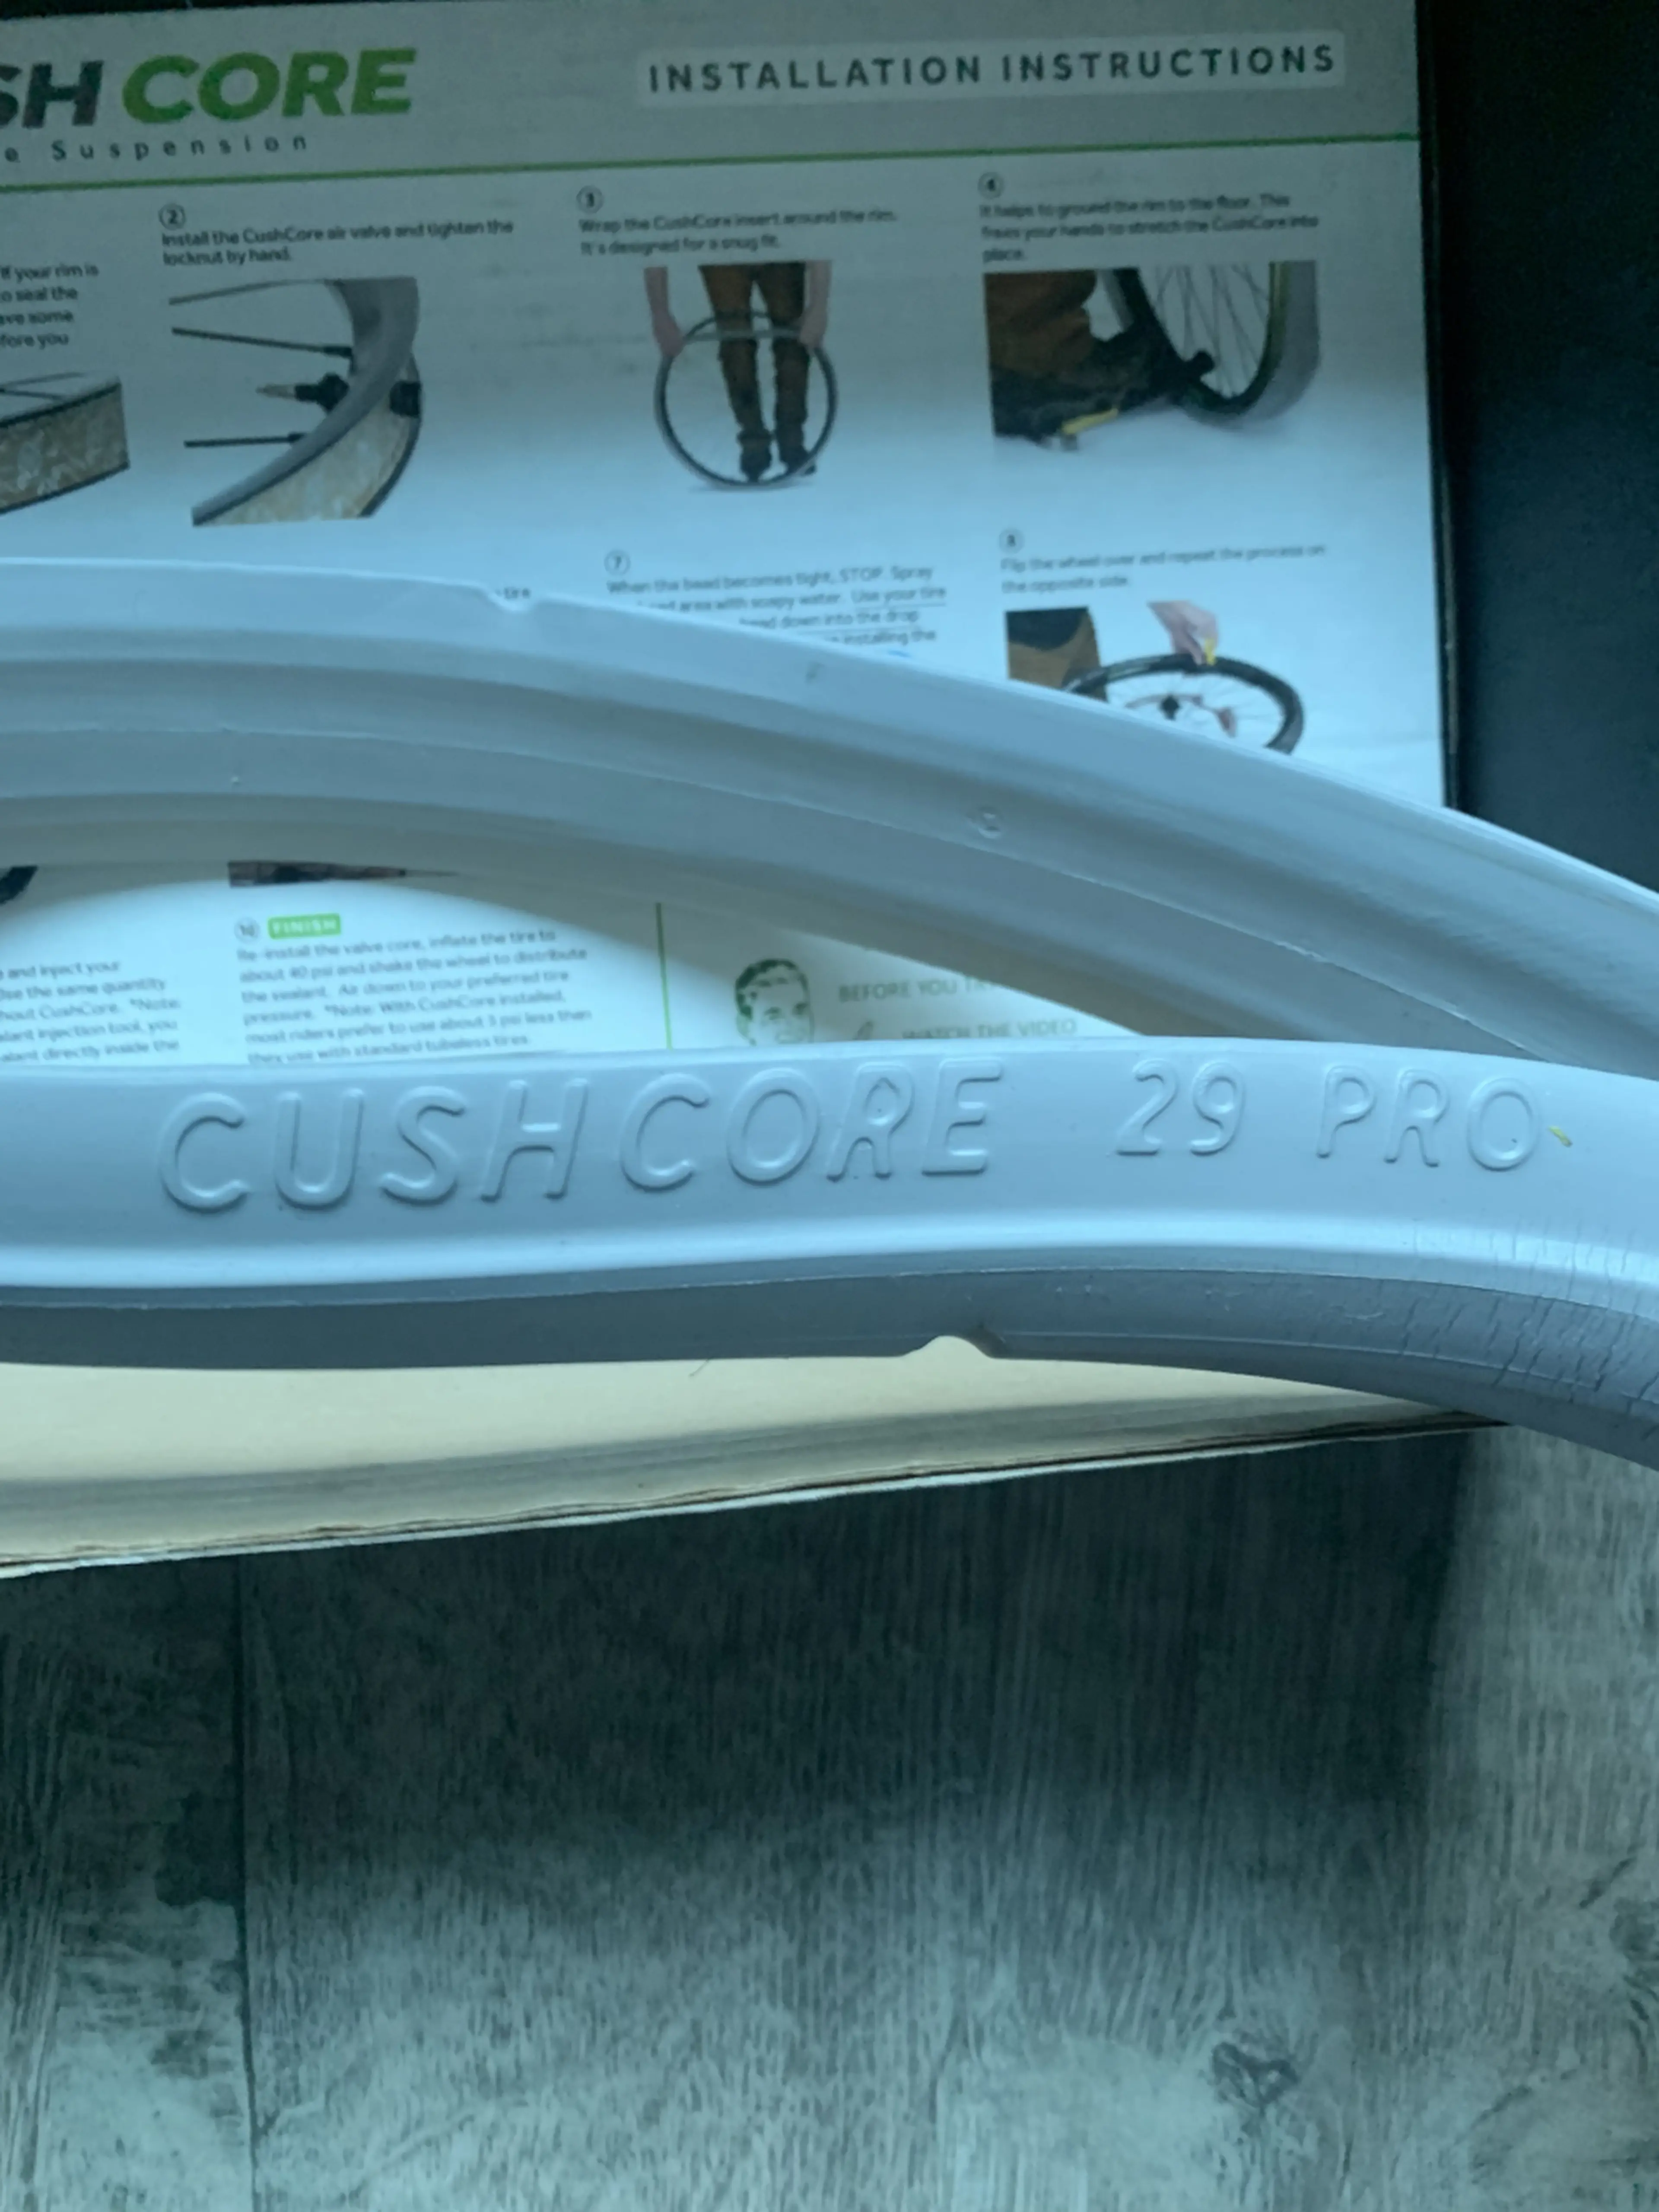 2. Cush Core 29 Pro